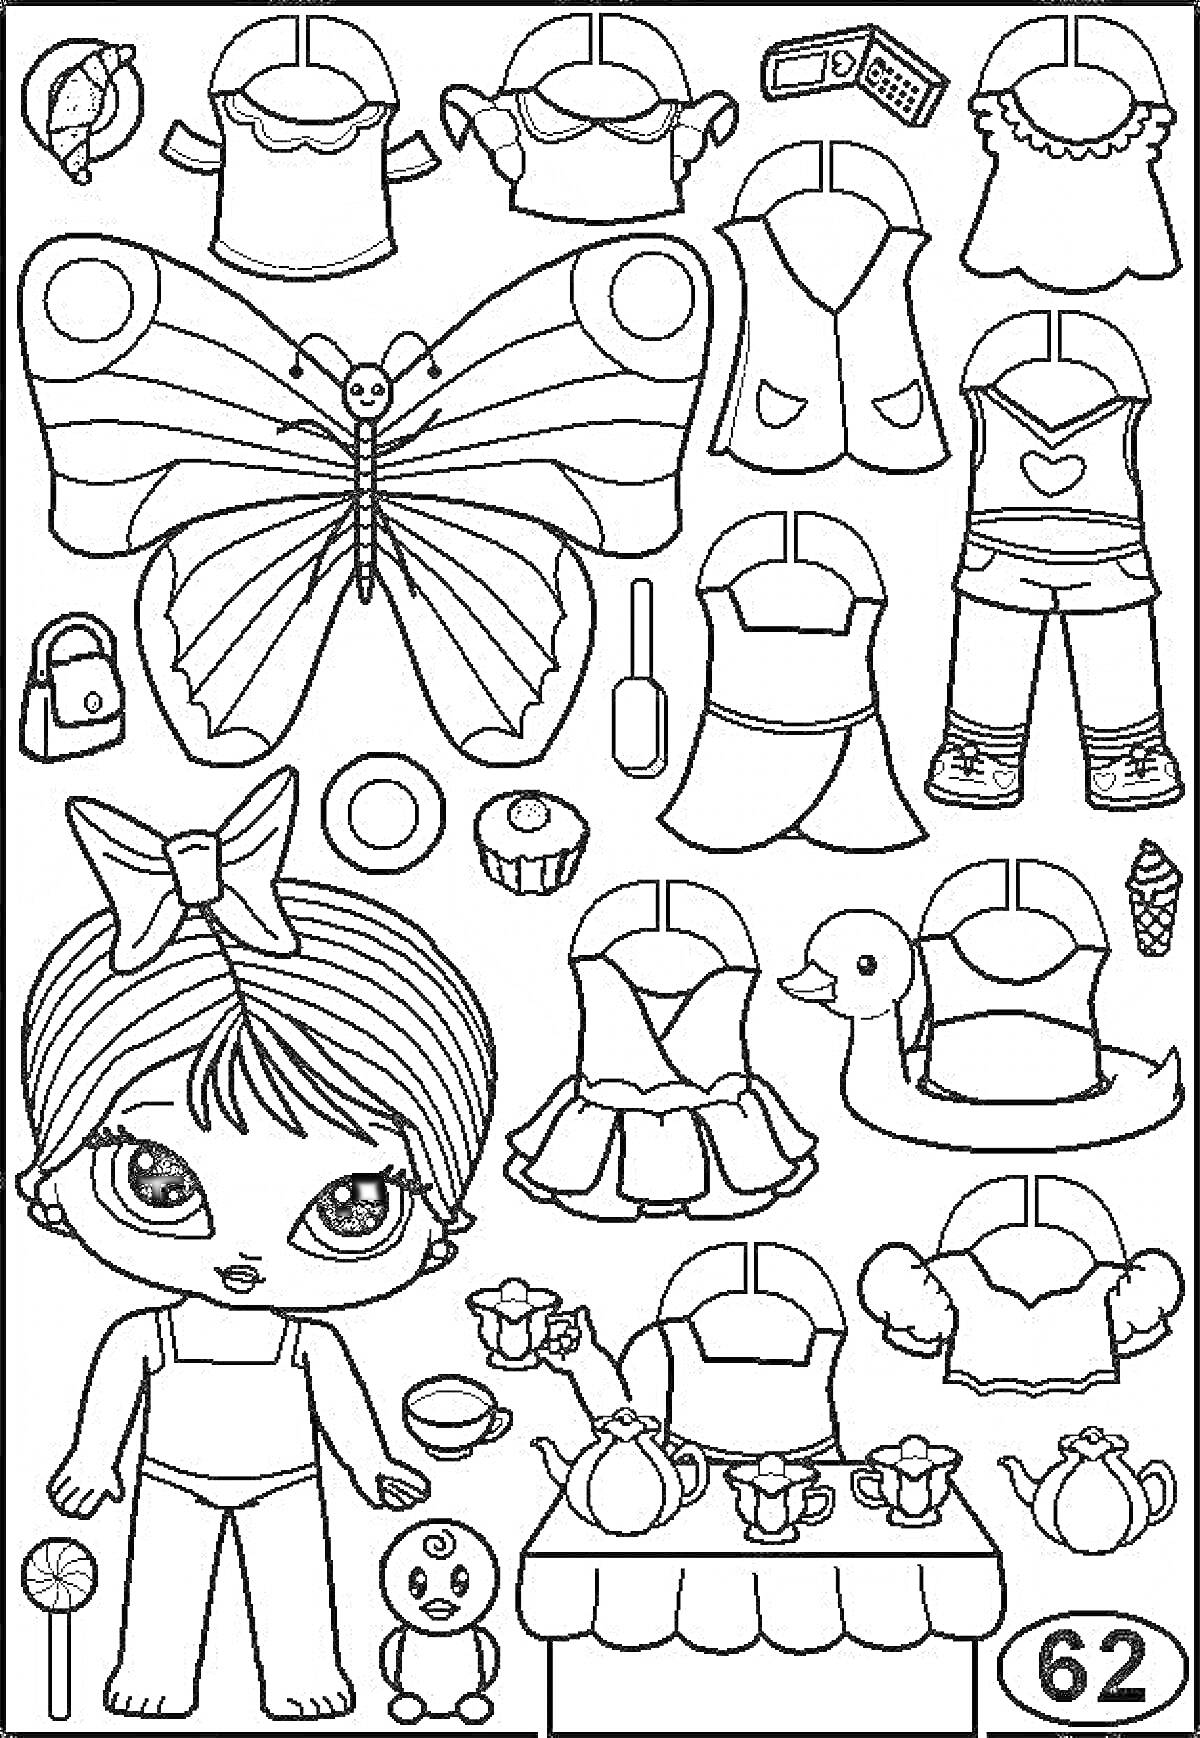 Раскраска Кукла ЛОЛ с одеждой и аксесуарами для вырезания - платье, топы, жилет, штаны, крылья бабочки, сумка, телефон, лак для ногтей, кекс, напиток, мороженое, зефир, утка, набор чайного сервиза с чайником и чашками, кукла, стол.